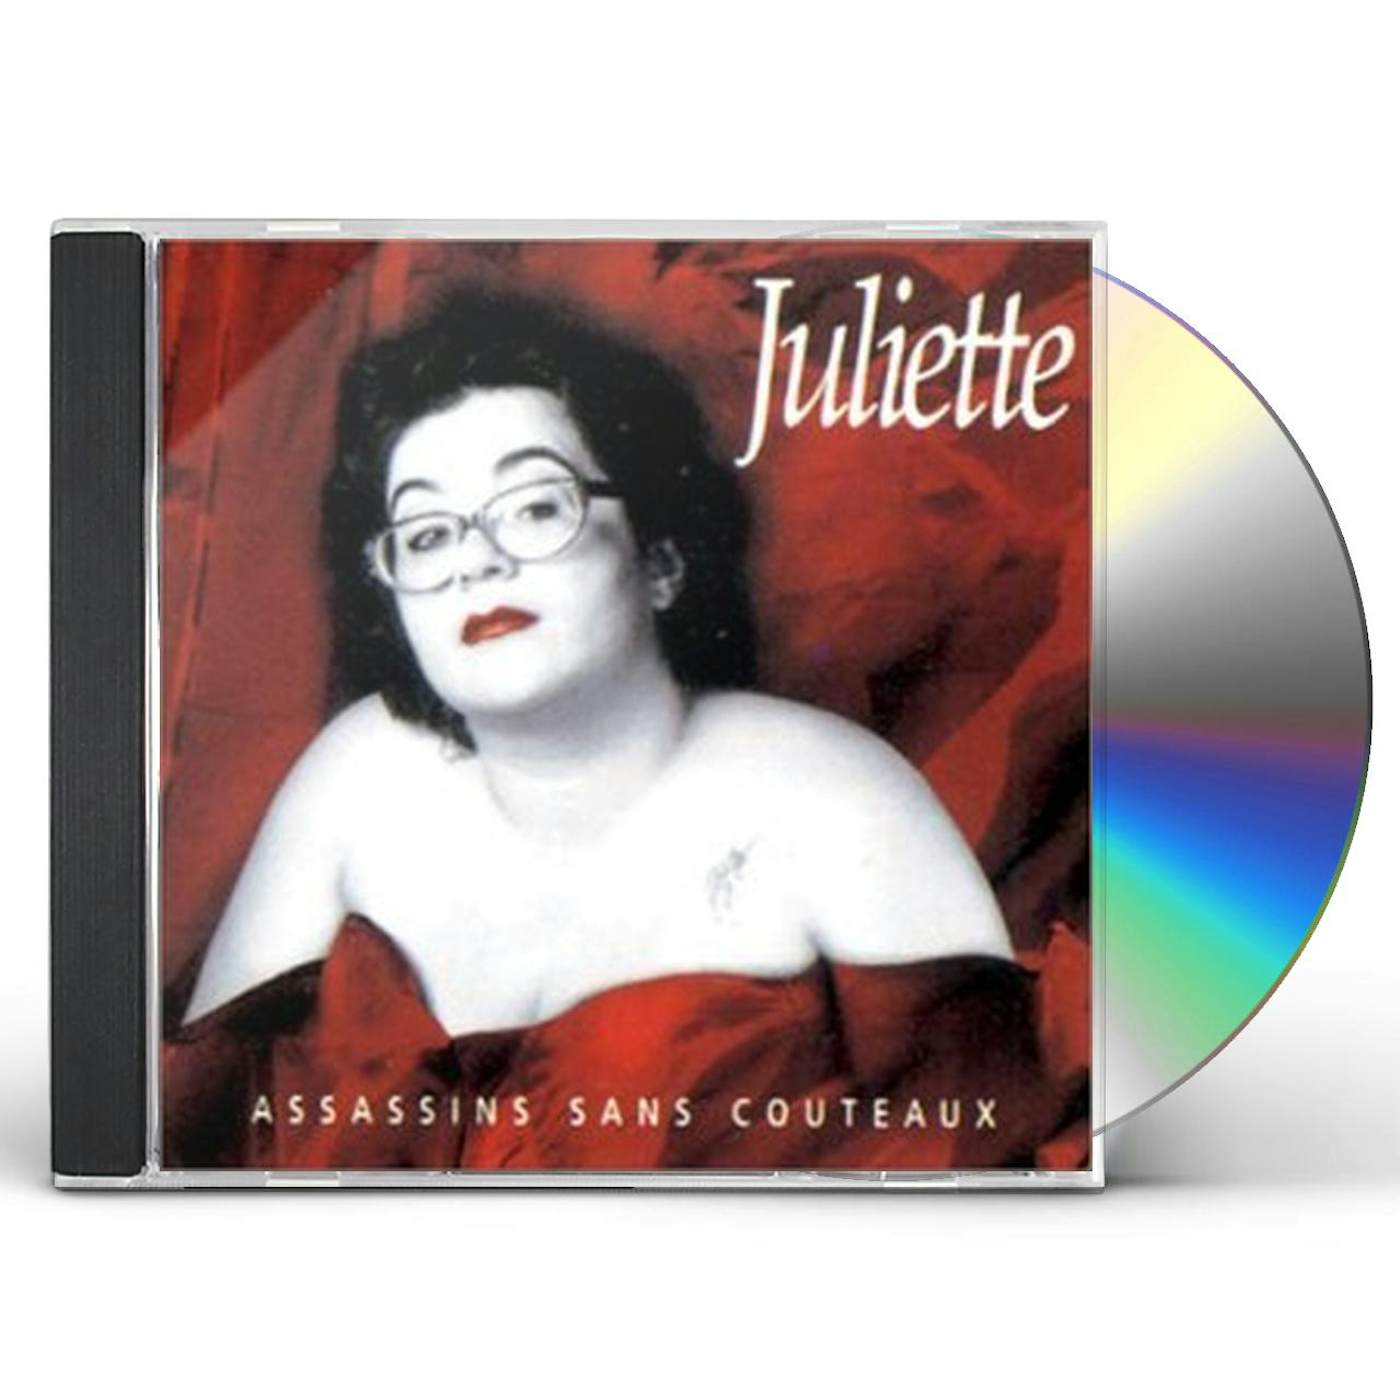 Juliette ASSASSINS SANS COUTEAUX CD